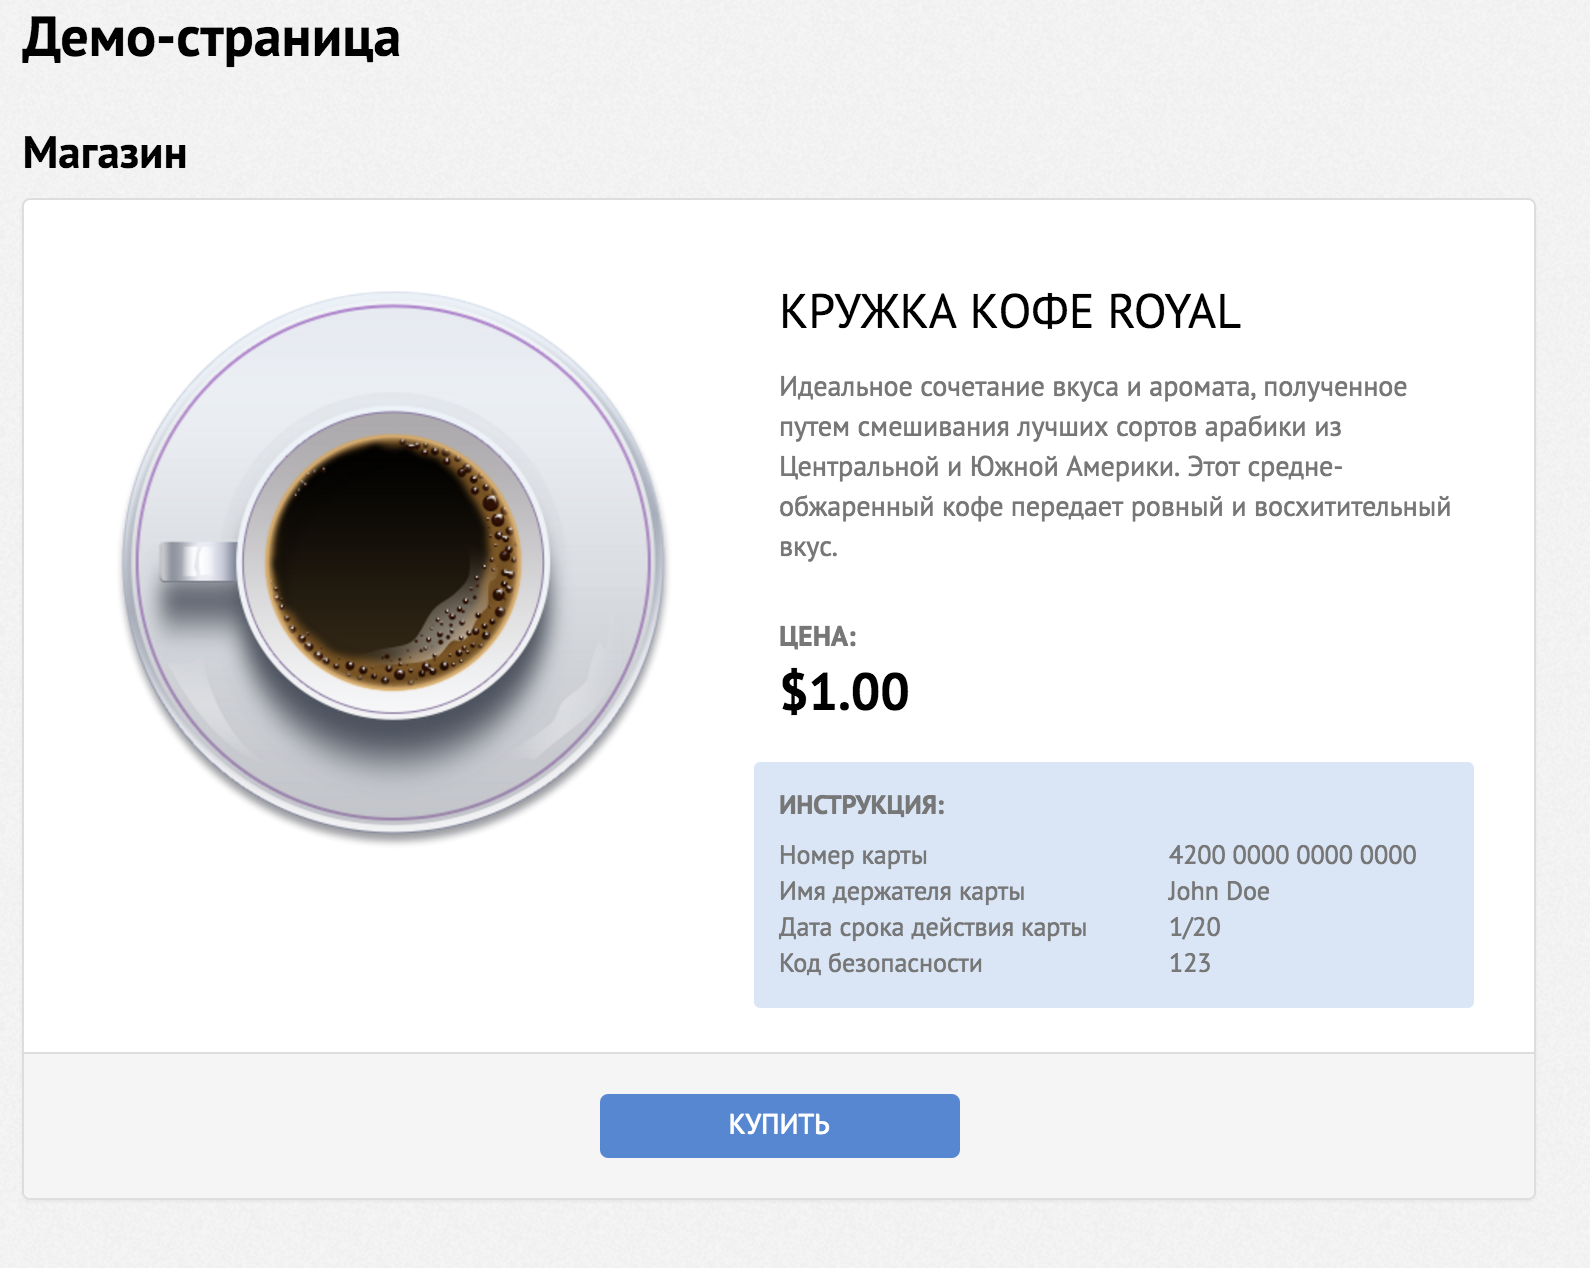 Демо-версия онлайн-оплаты. Купить кружку кофе